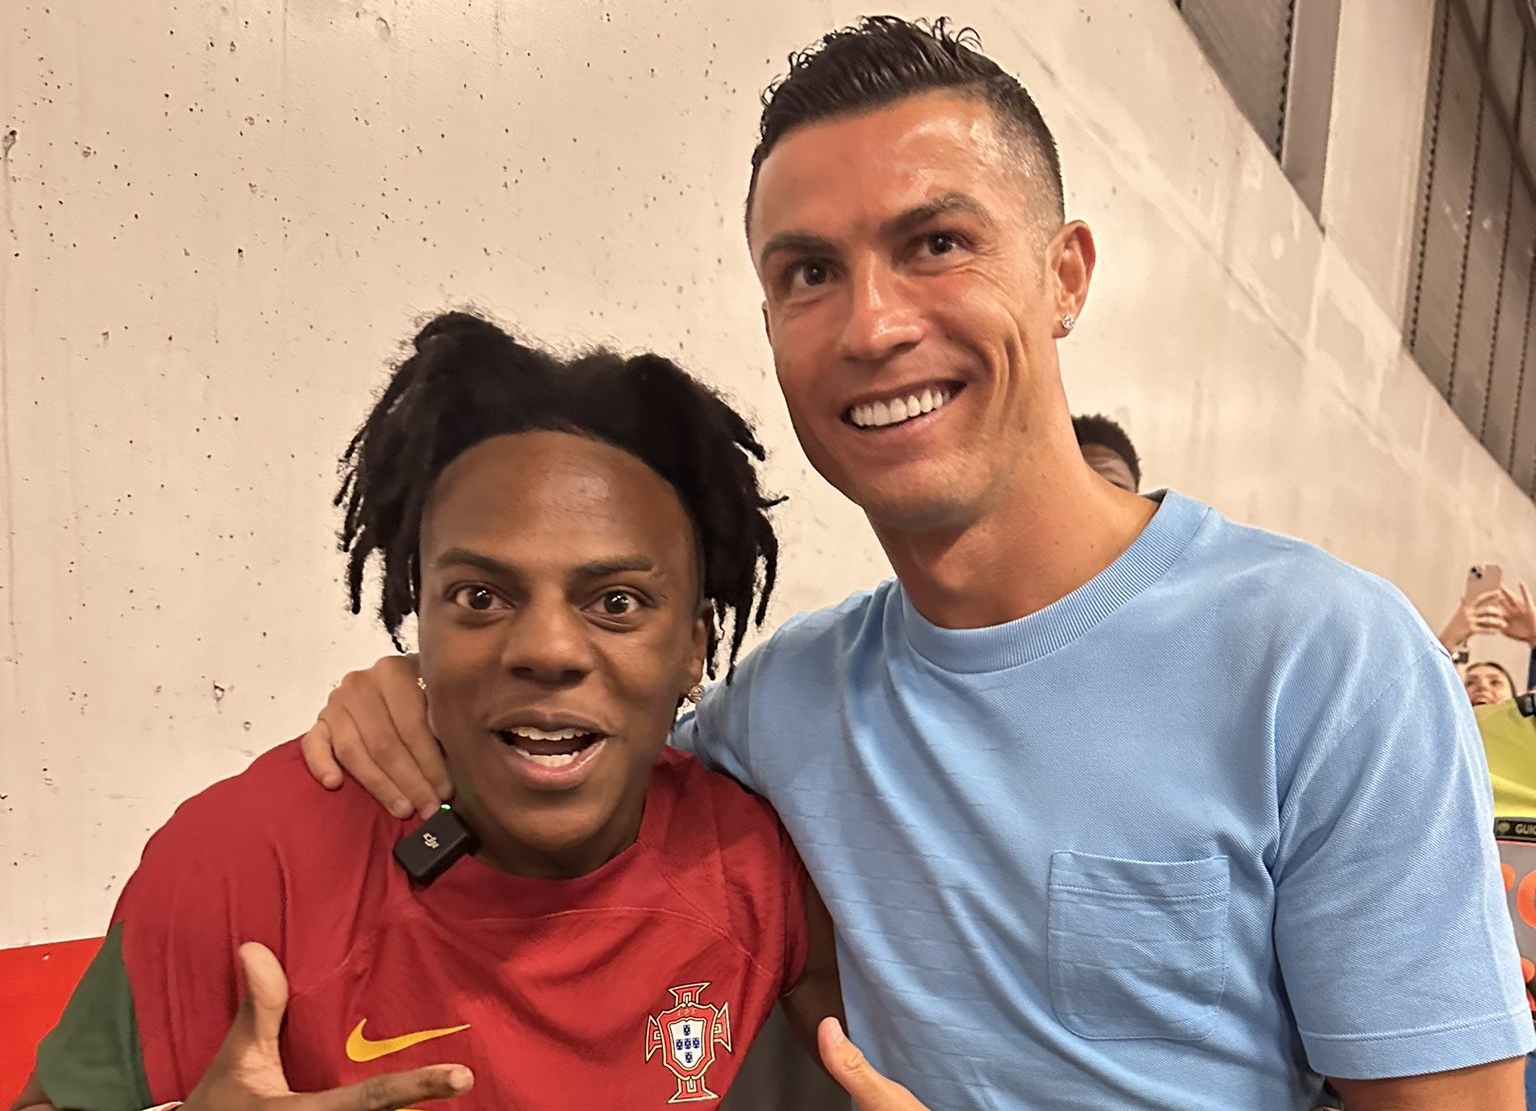 Speed conoció a Cristiano Ronaldo